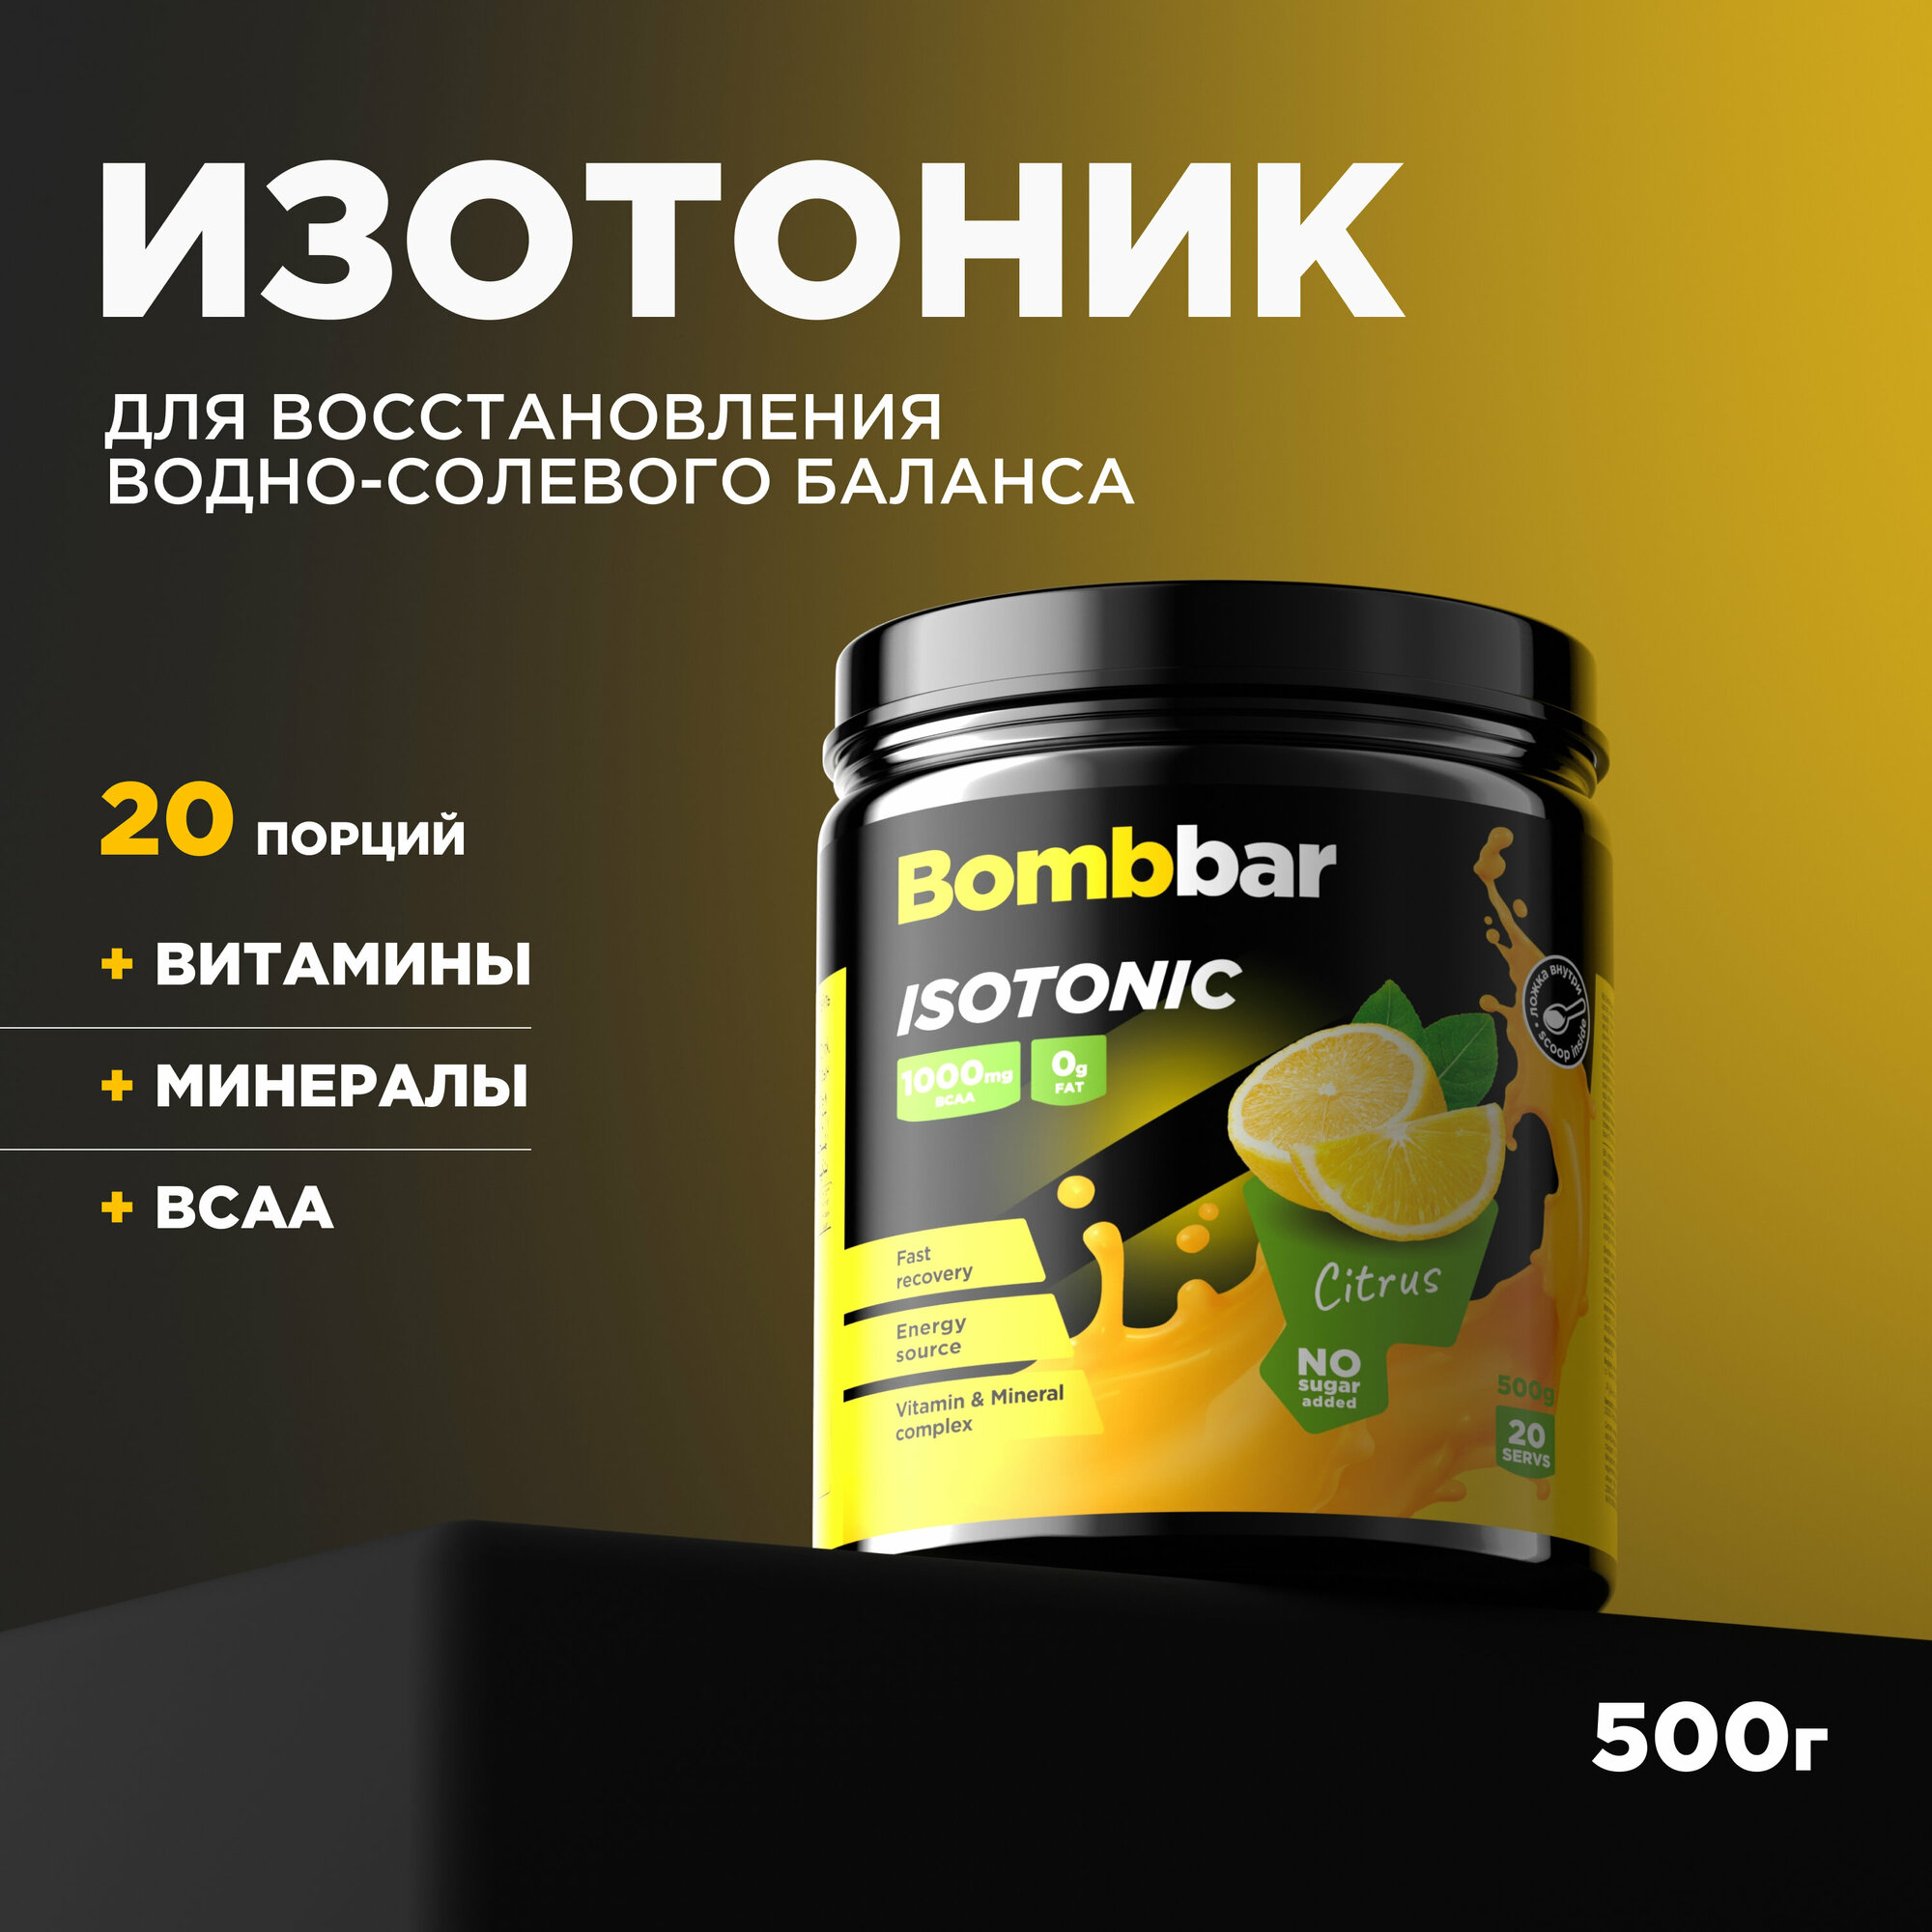 Bombbar Pro Isotonic Изотонический напиток без сахара "Цитрус", 500 г